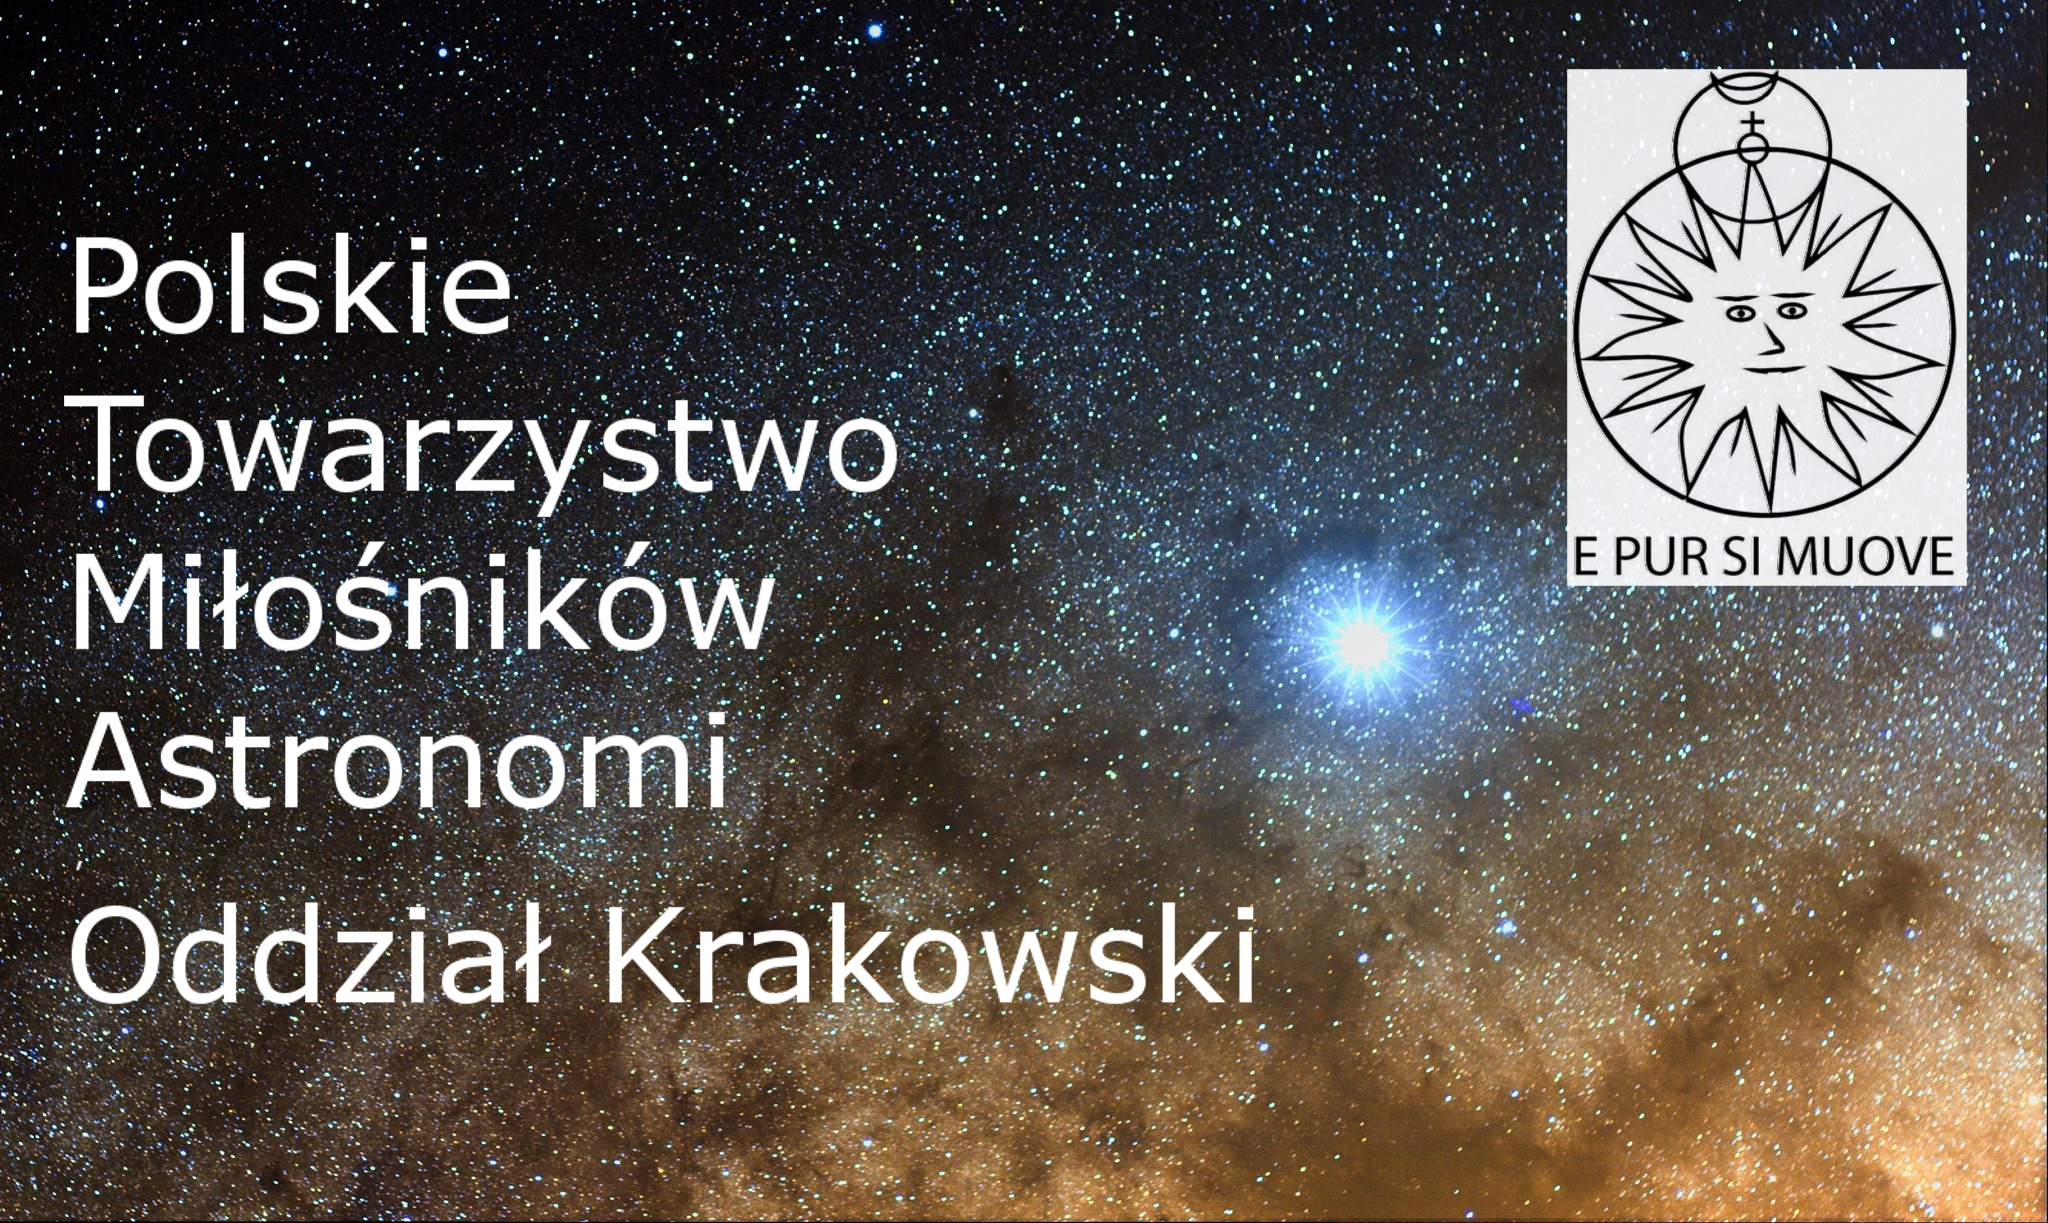 Urania jest kobietą – kobiety w astronomii | dr hab. Tomasz Ściężor | PTMA Kraków @ ul. Górników 27